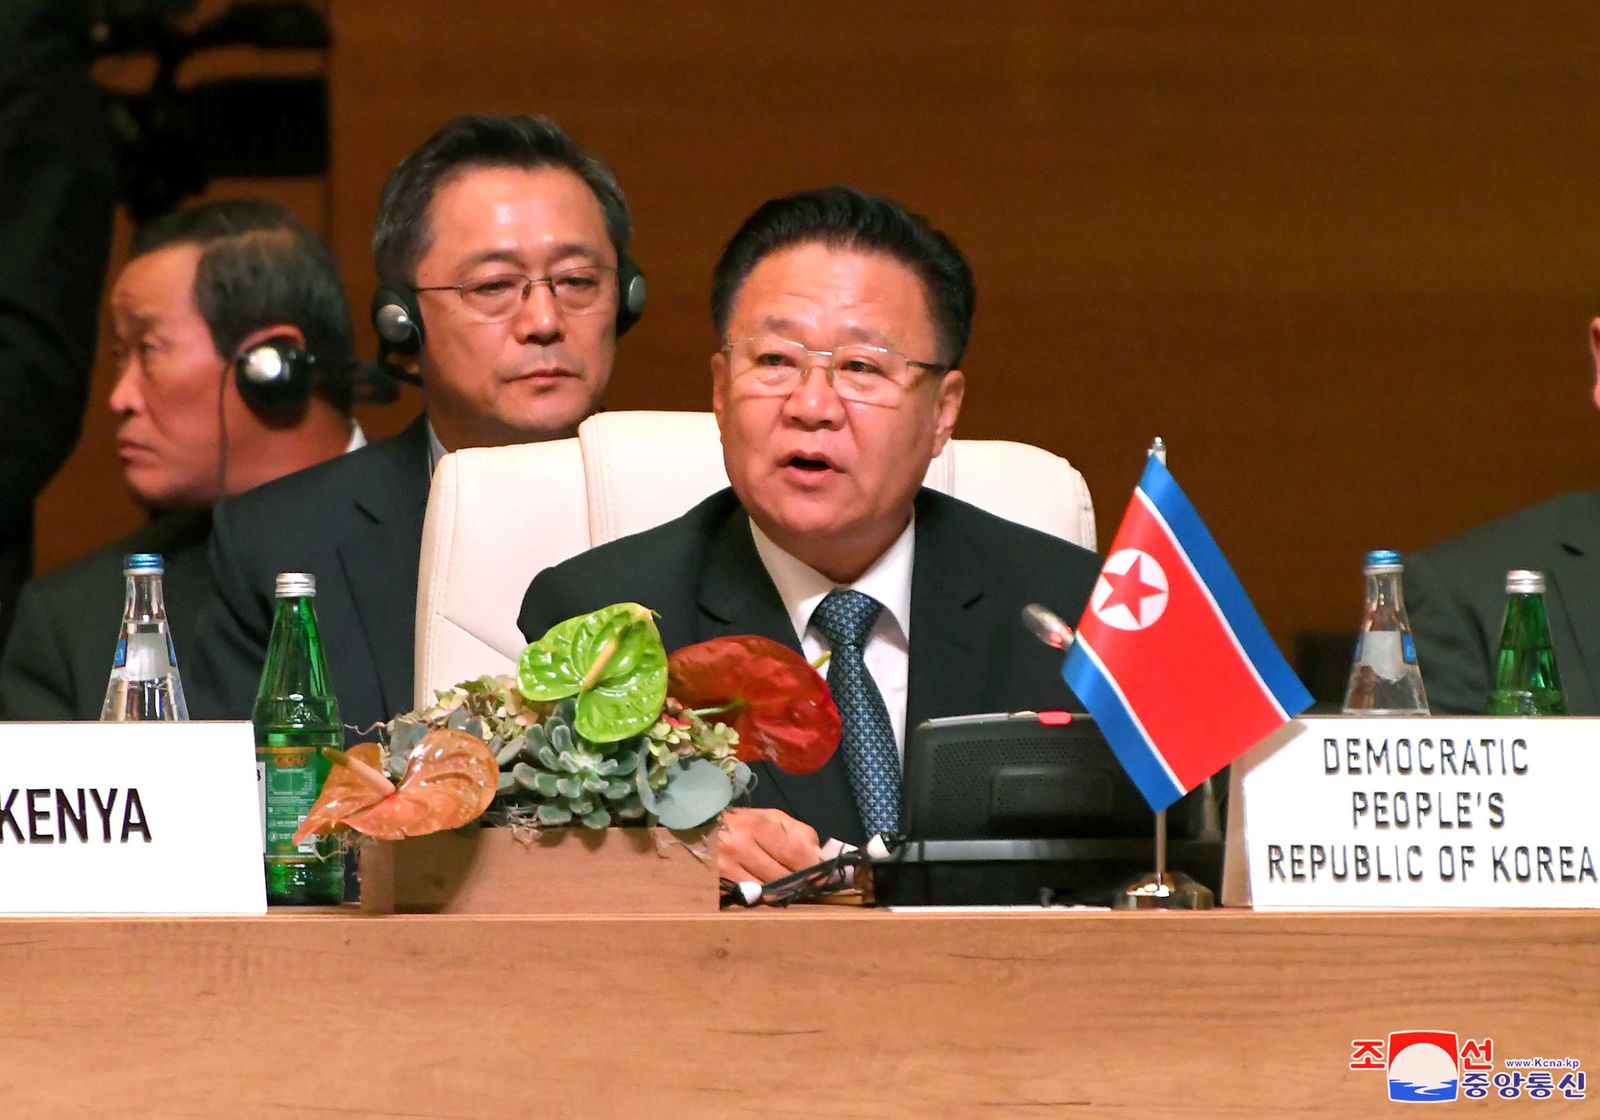 تشوي ريونغ هاي، رئيس اللجنة الدائمة لمجلس الشعب الأعلى في كوريا الشمالية، يتحدث خلال قمة حركة عدم الانحياز في باكو - 29 أكتوبر 2019 - REUTERS